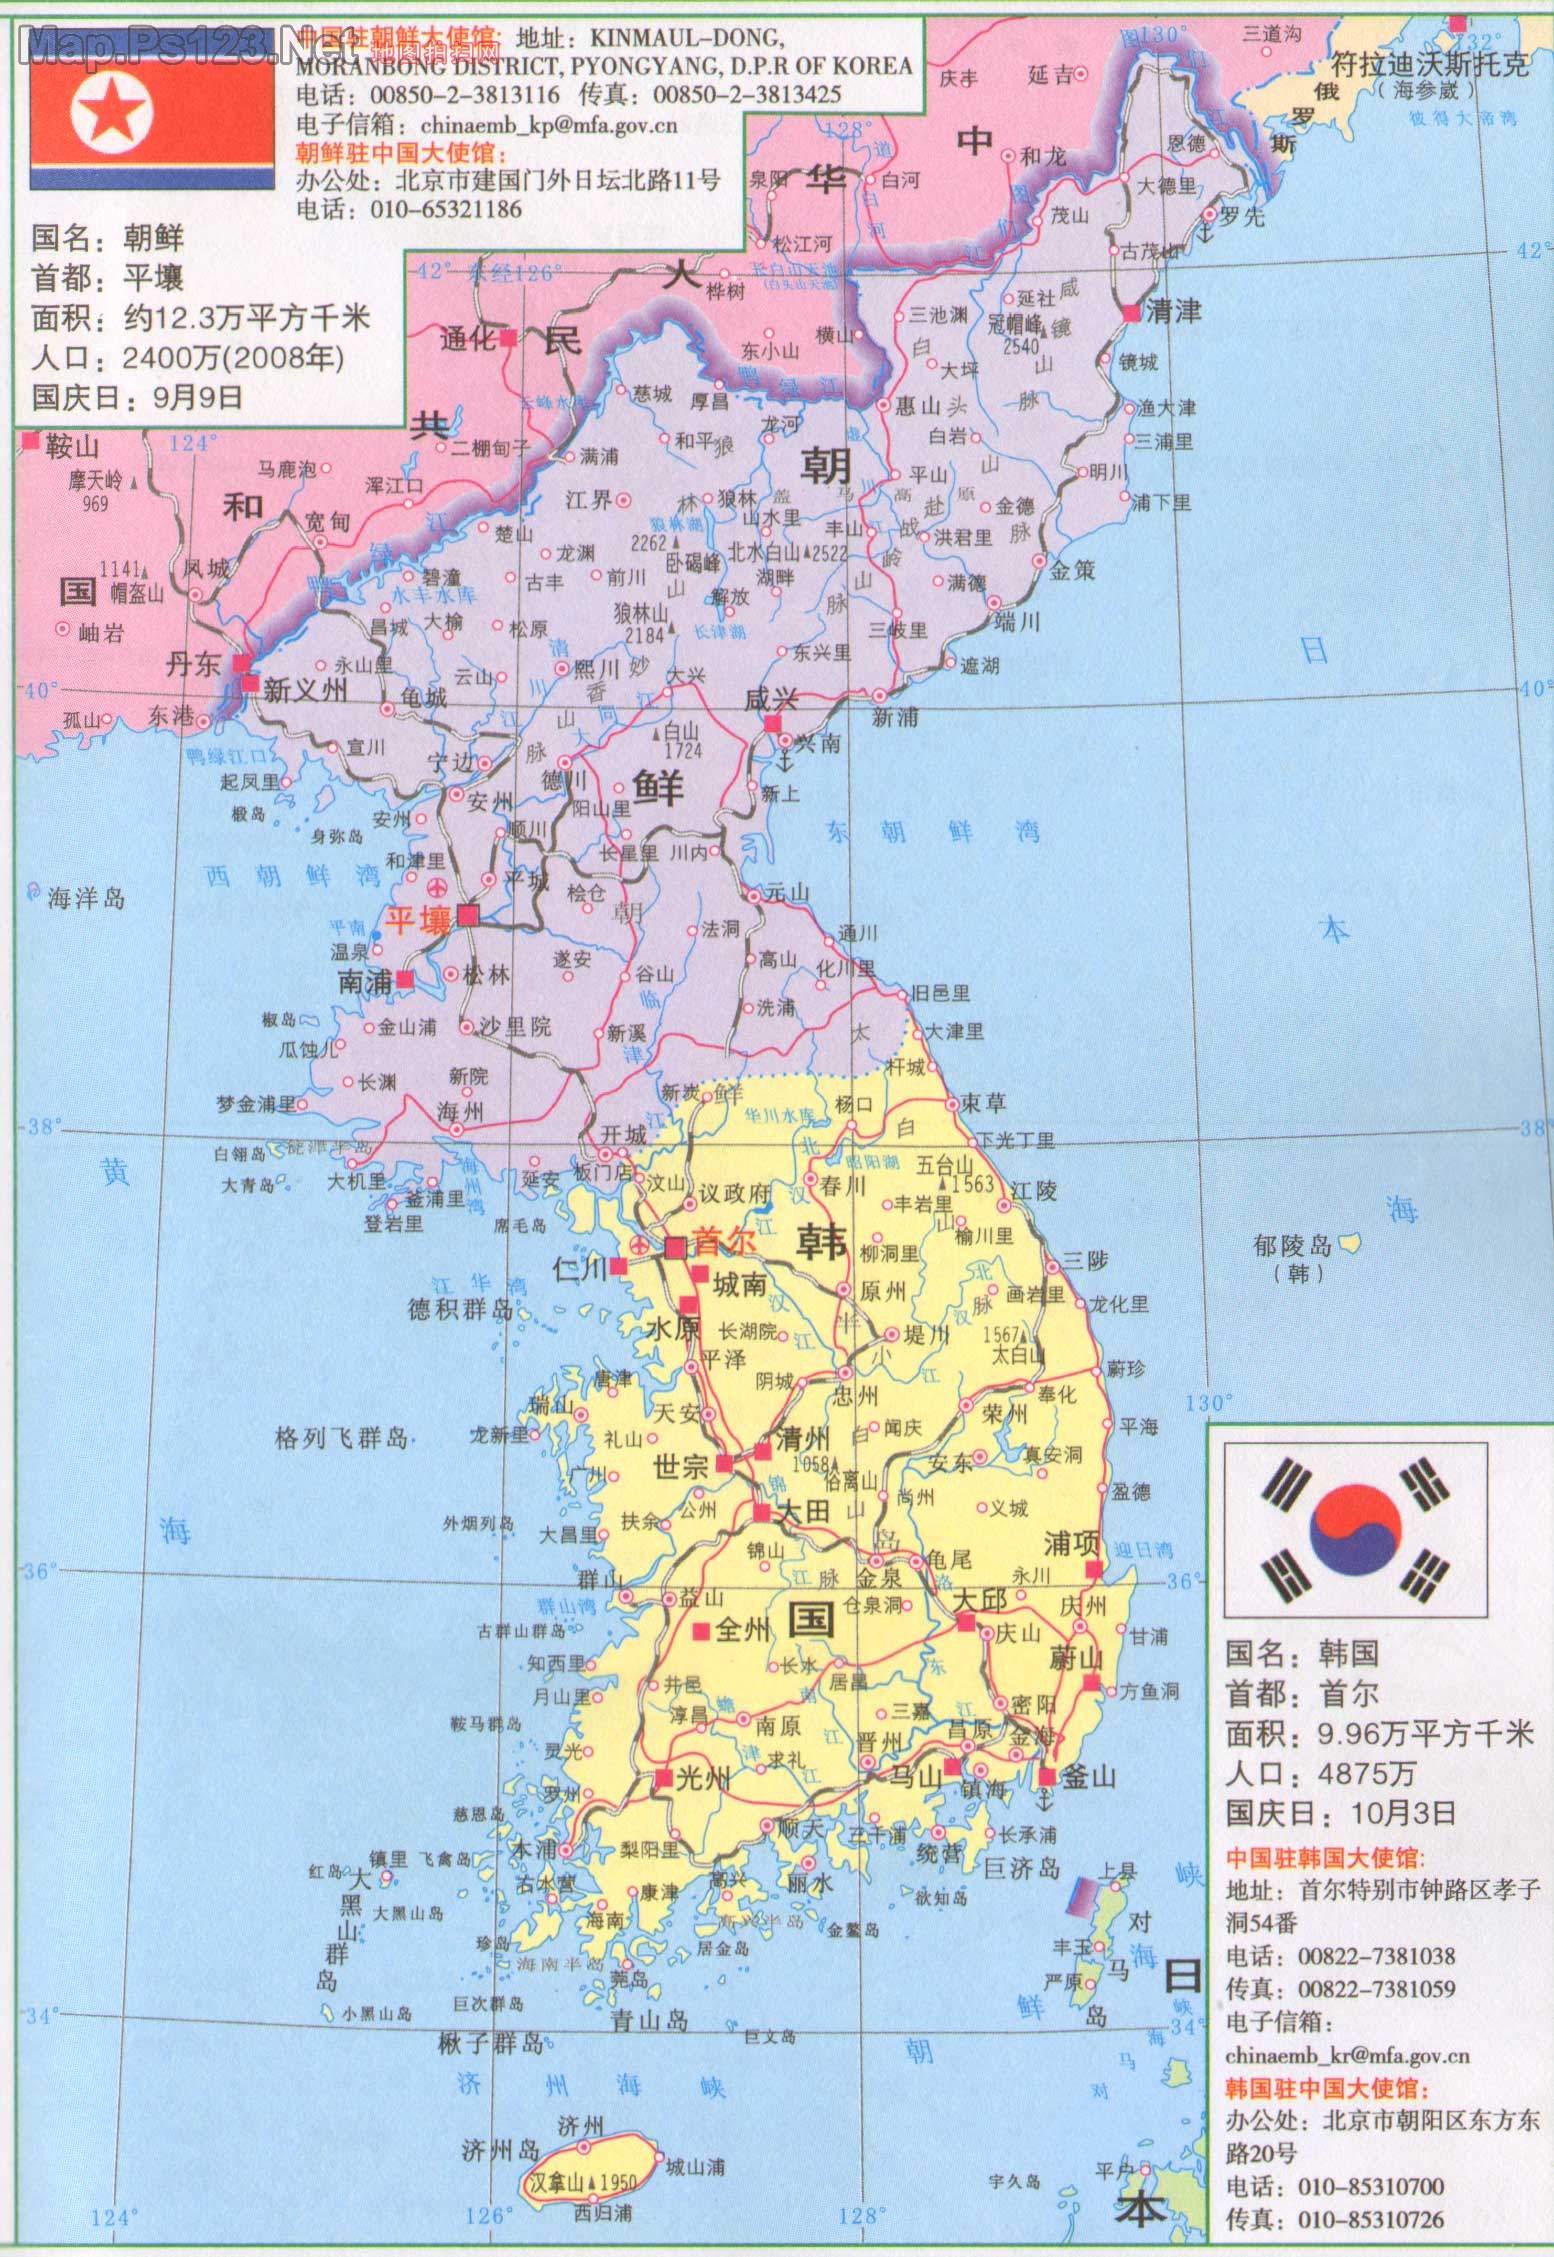 1,朝鲜国土面积大约12万平方公里,相当于我国福建省的面积大小,计划